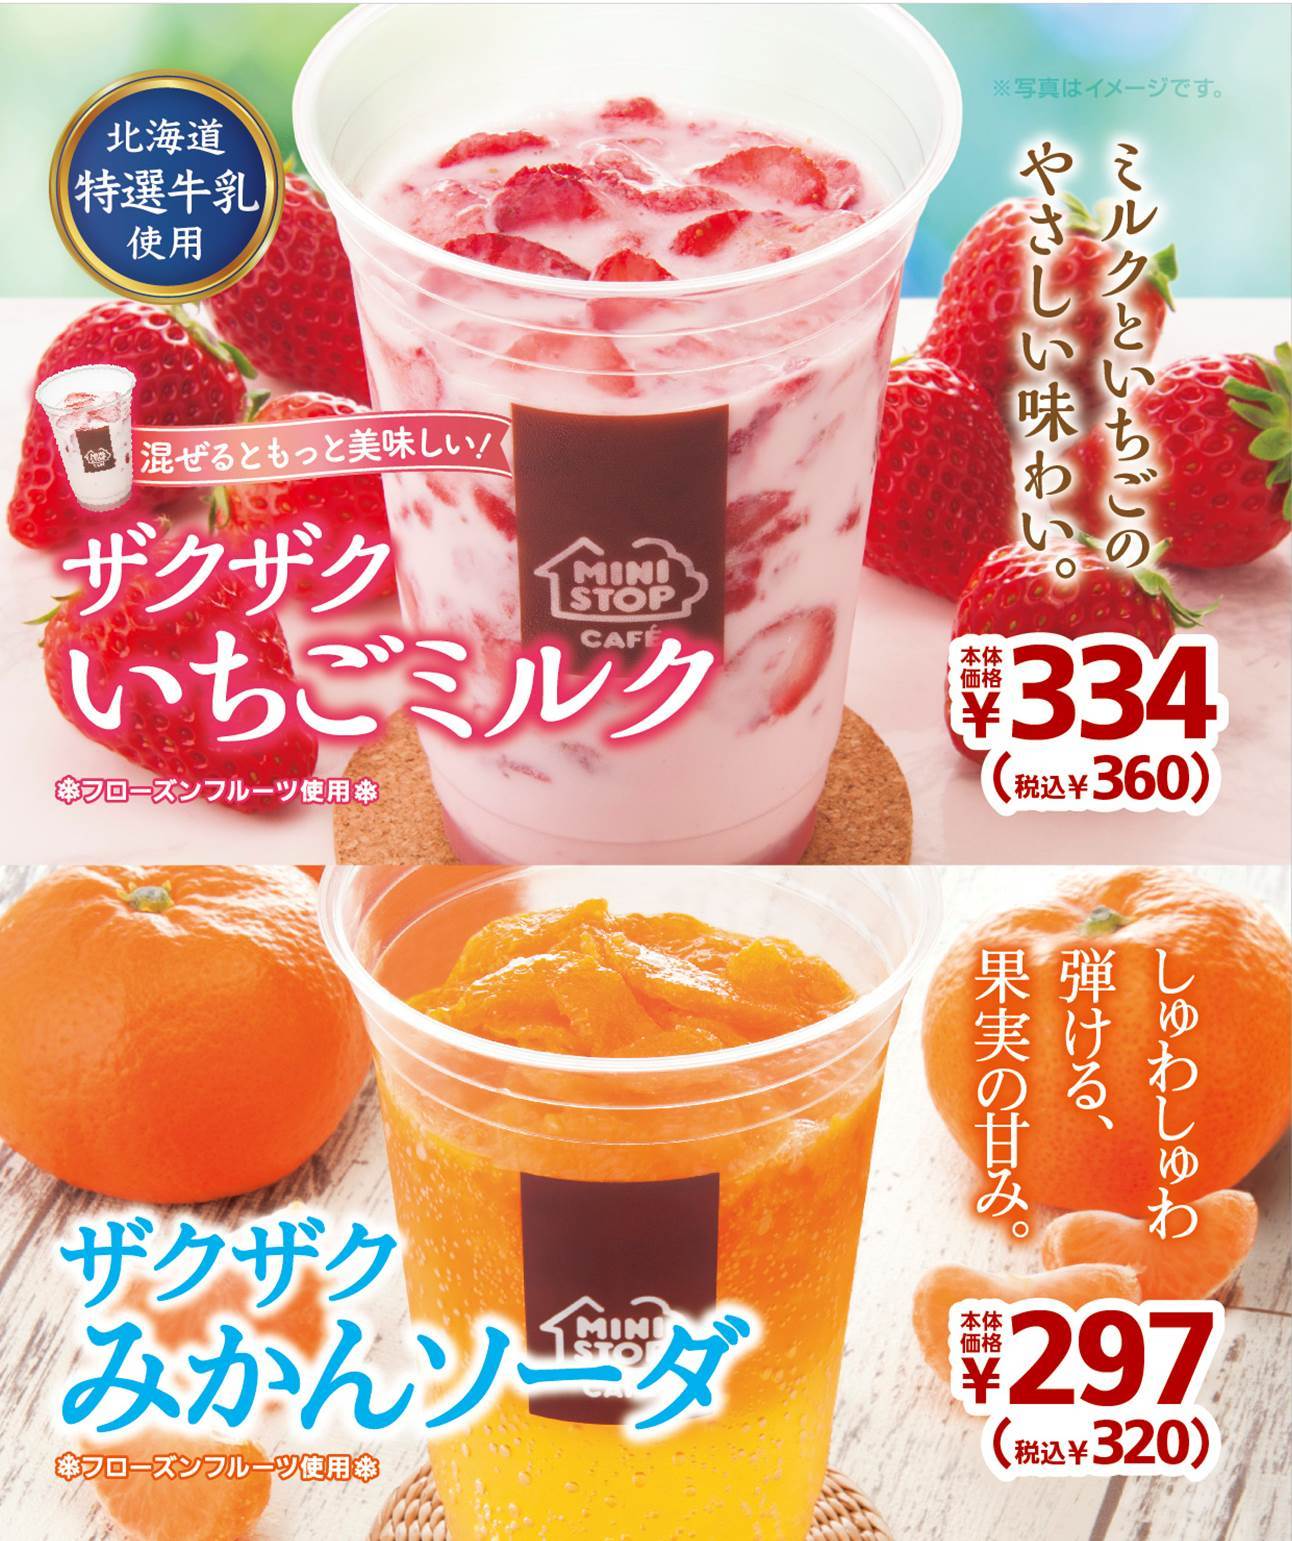 ～ついに、白桃が果実氷に～
「ハロハロ 果実氷白桃」
７/５（金）より発売